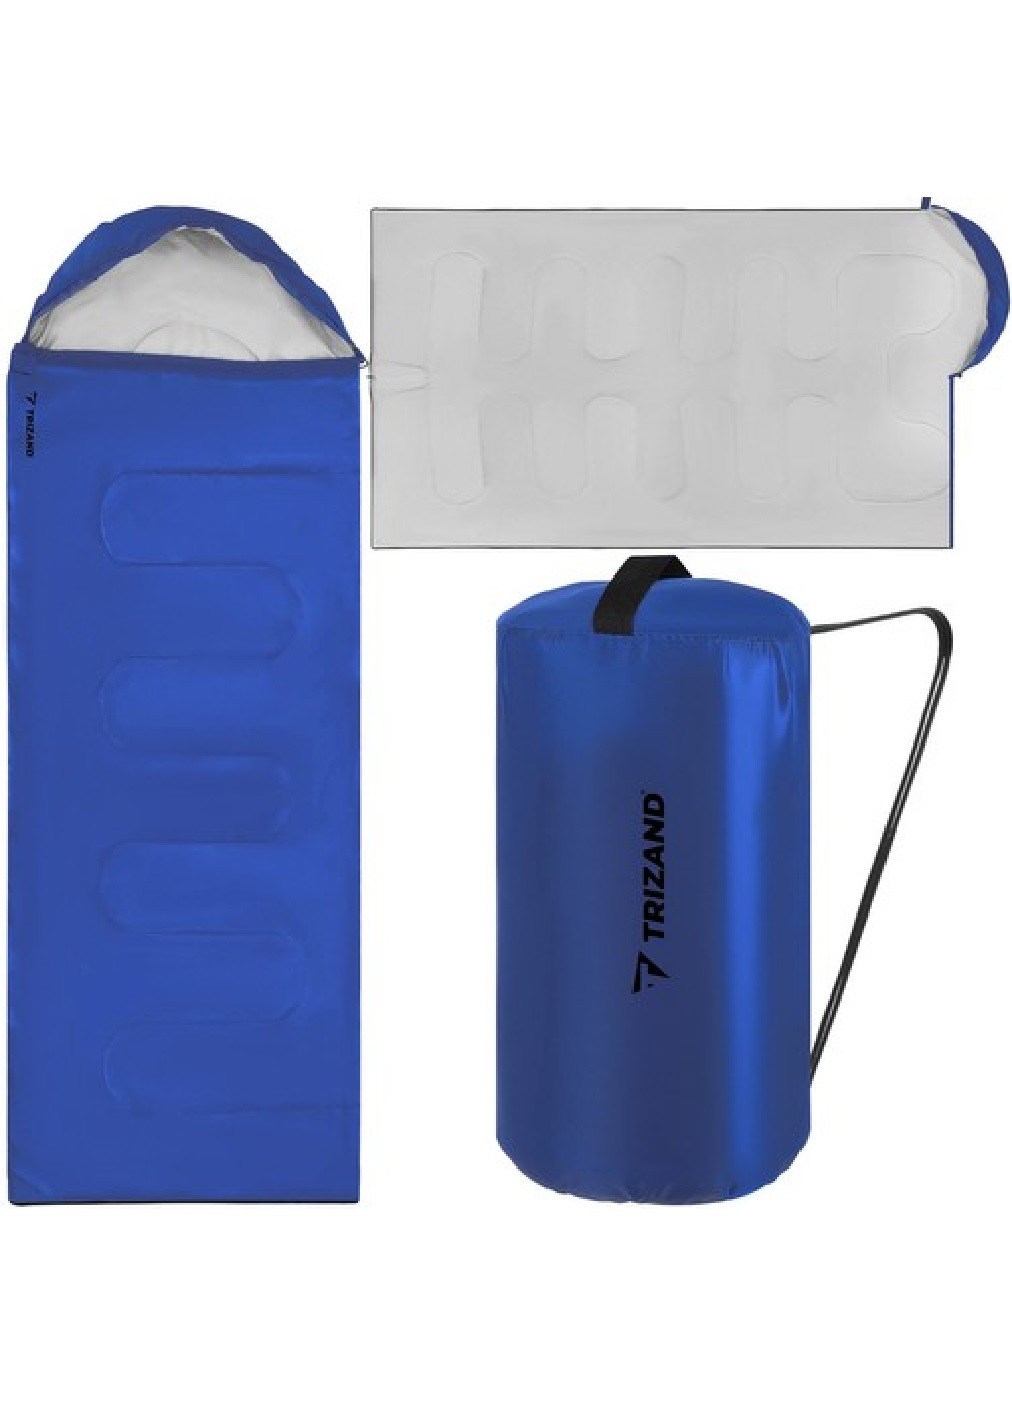 Спальный мешок спальник одеяло плед туристический походный водонепроницаемый с капюшоном 200х150 см (474875-Prob) Синий Unbranded (260072260)